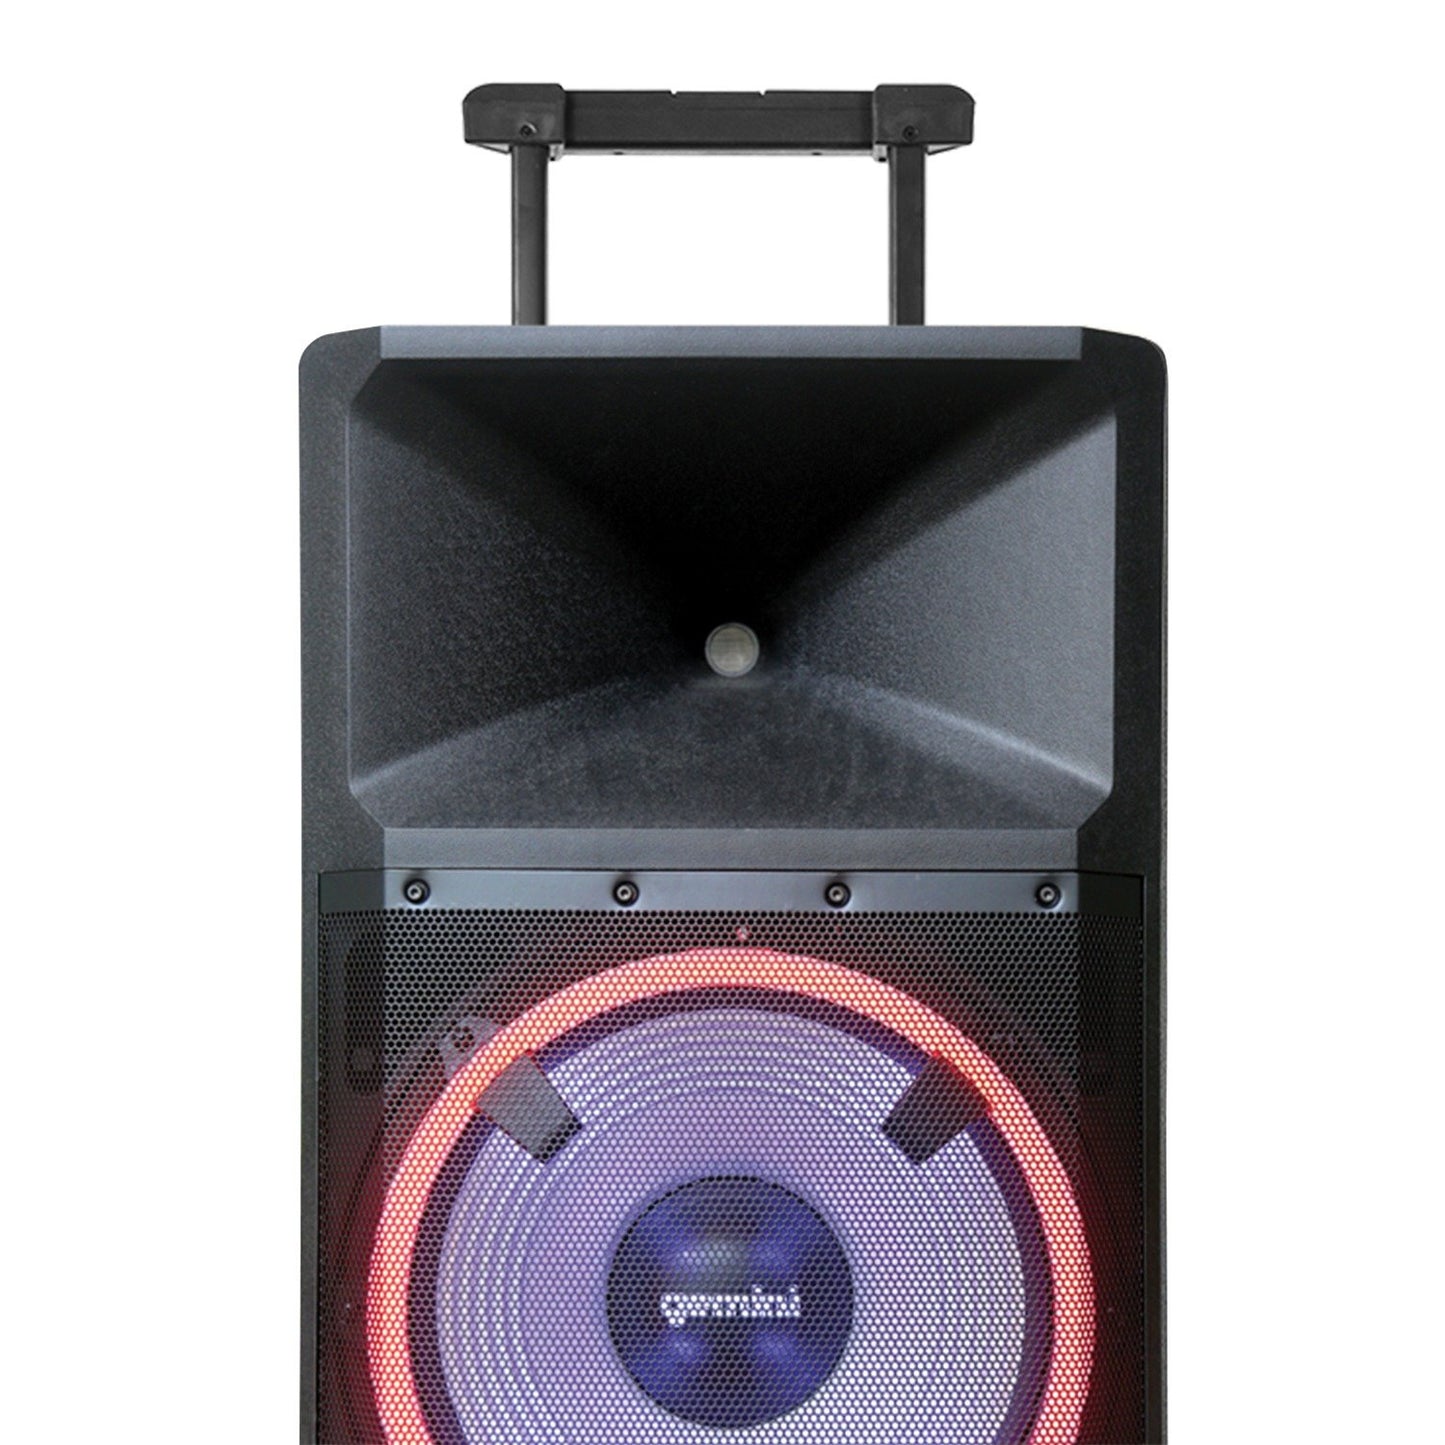 Gemini GSP-L2200PK Ultra-Powerful BT 2200Peak-Watt Speaker w/Lights Media Player